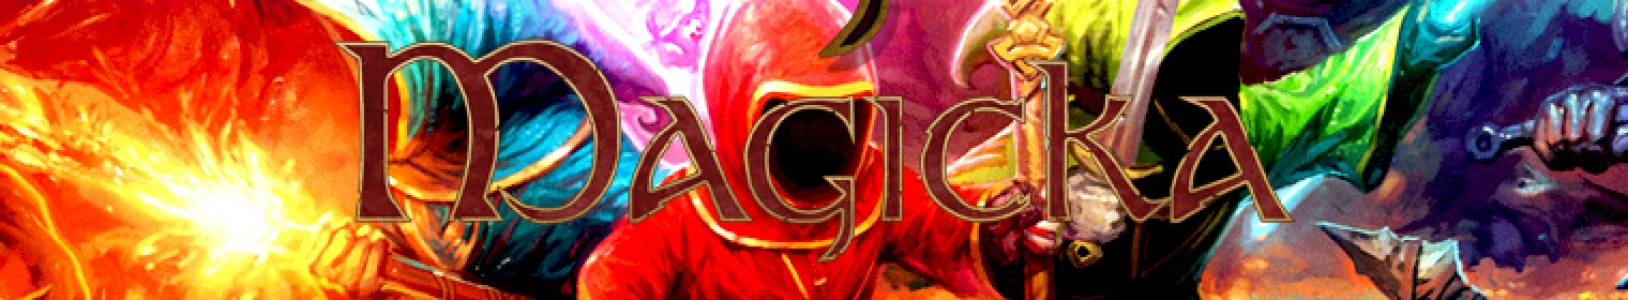 Magicka banner